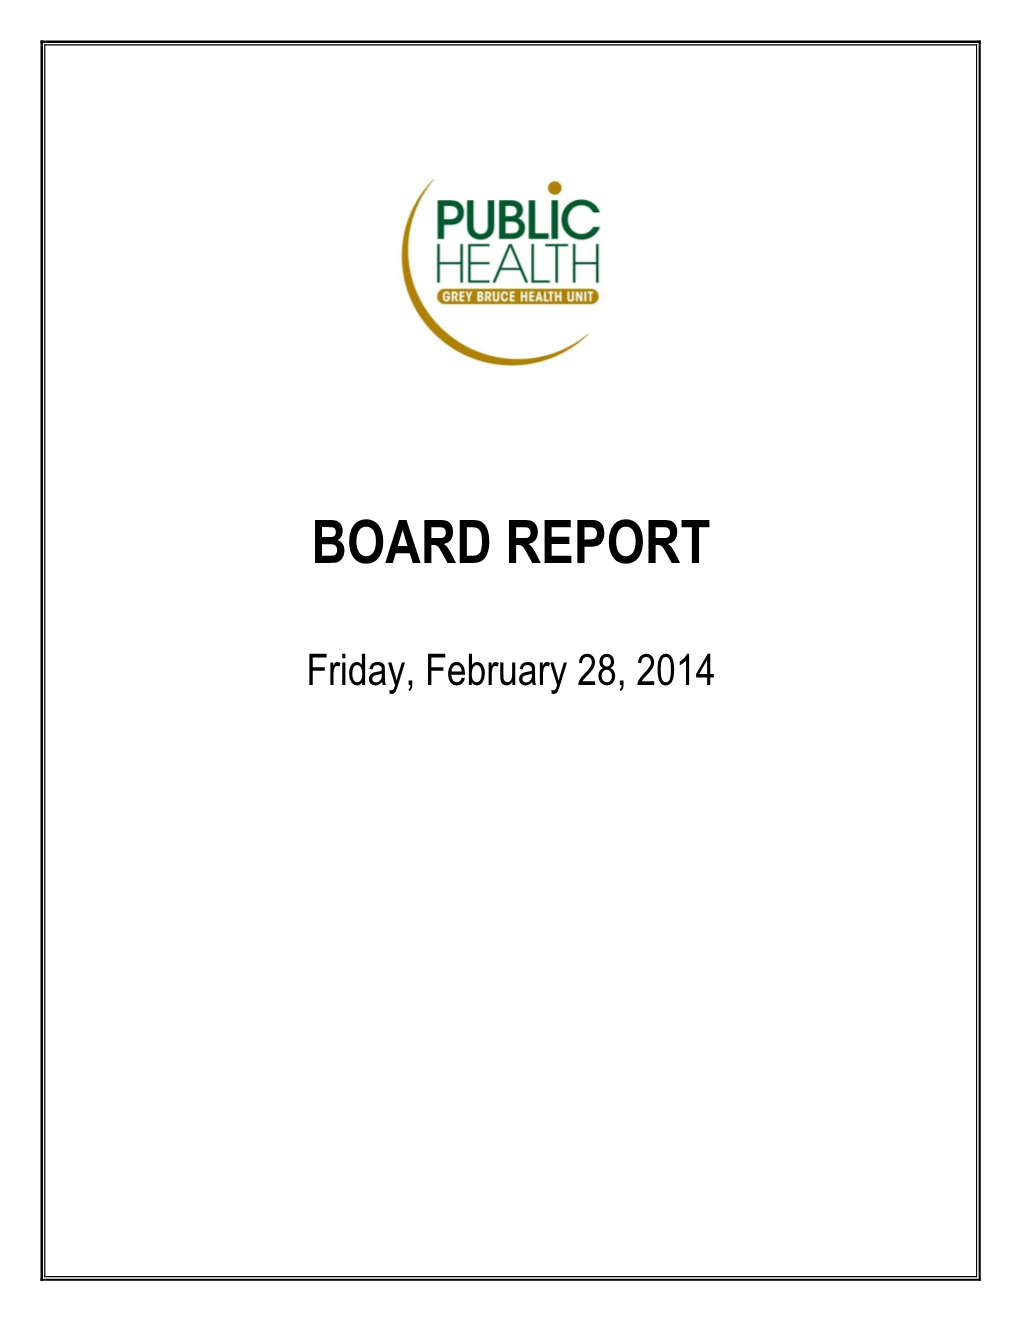 Board Report